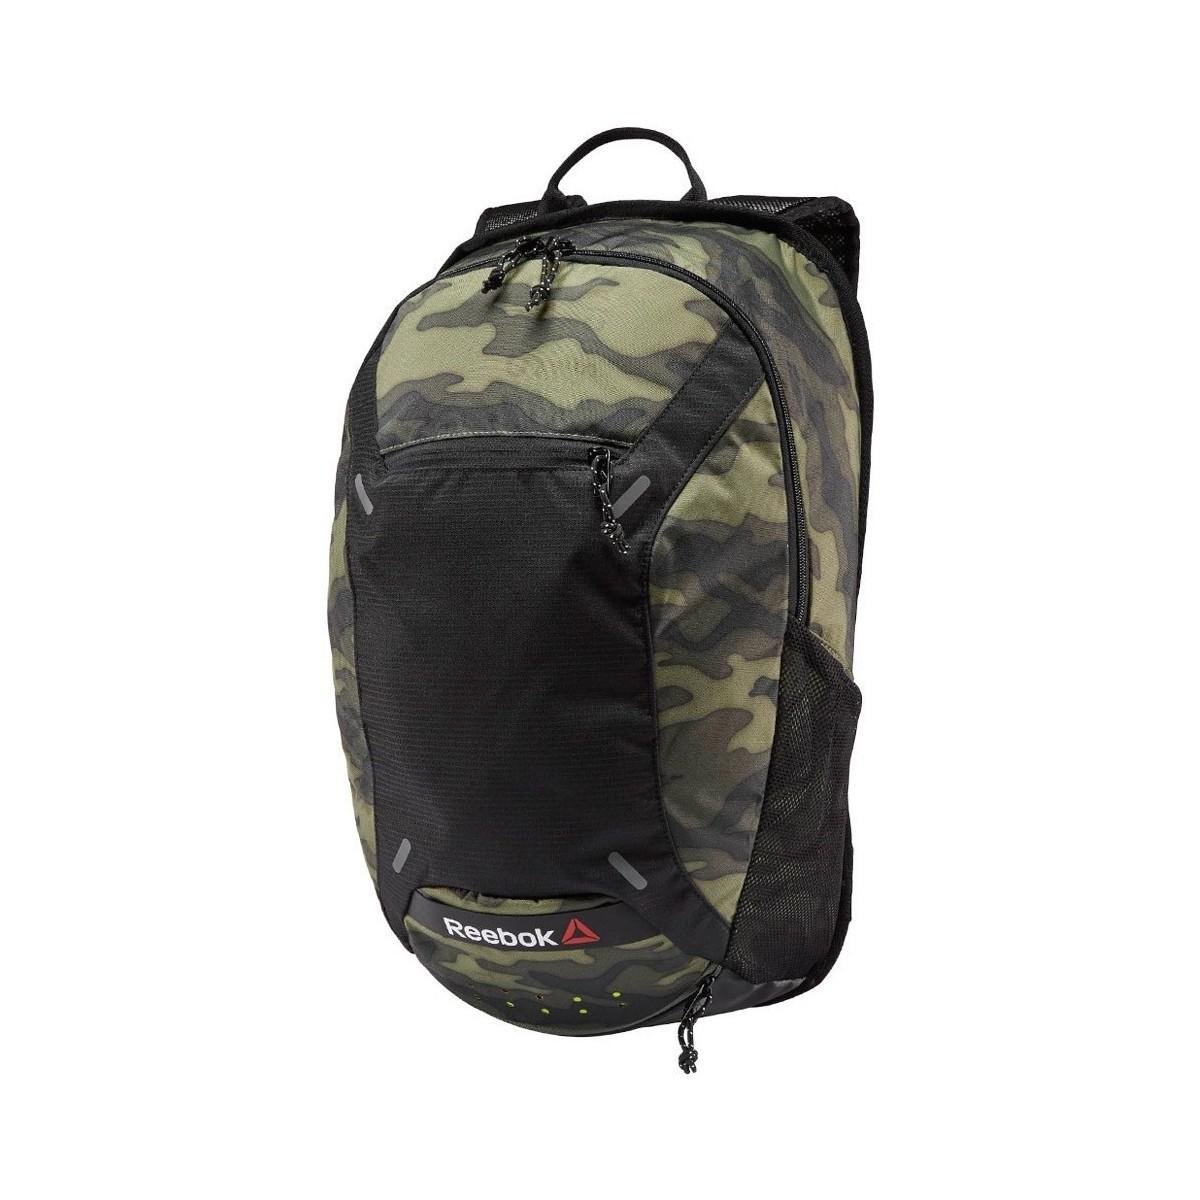 reebok green backpack